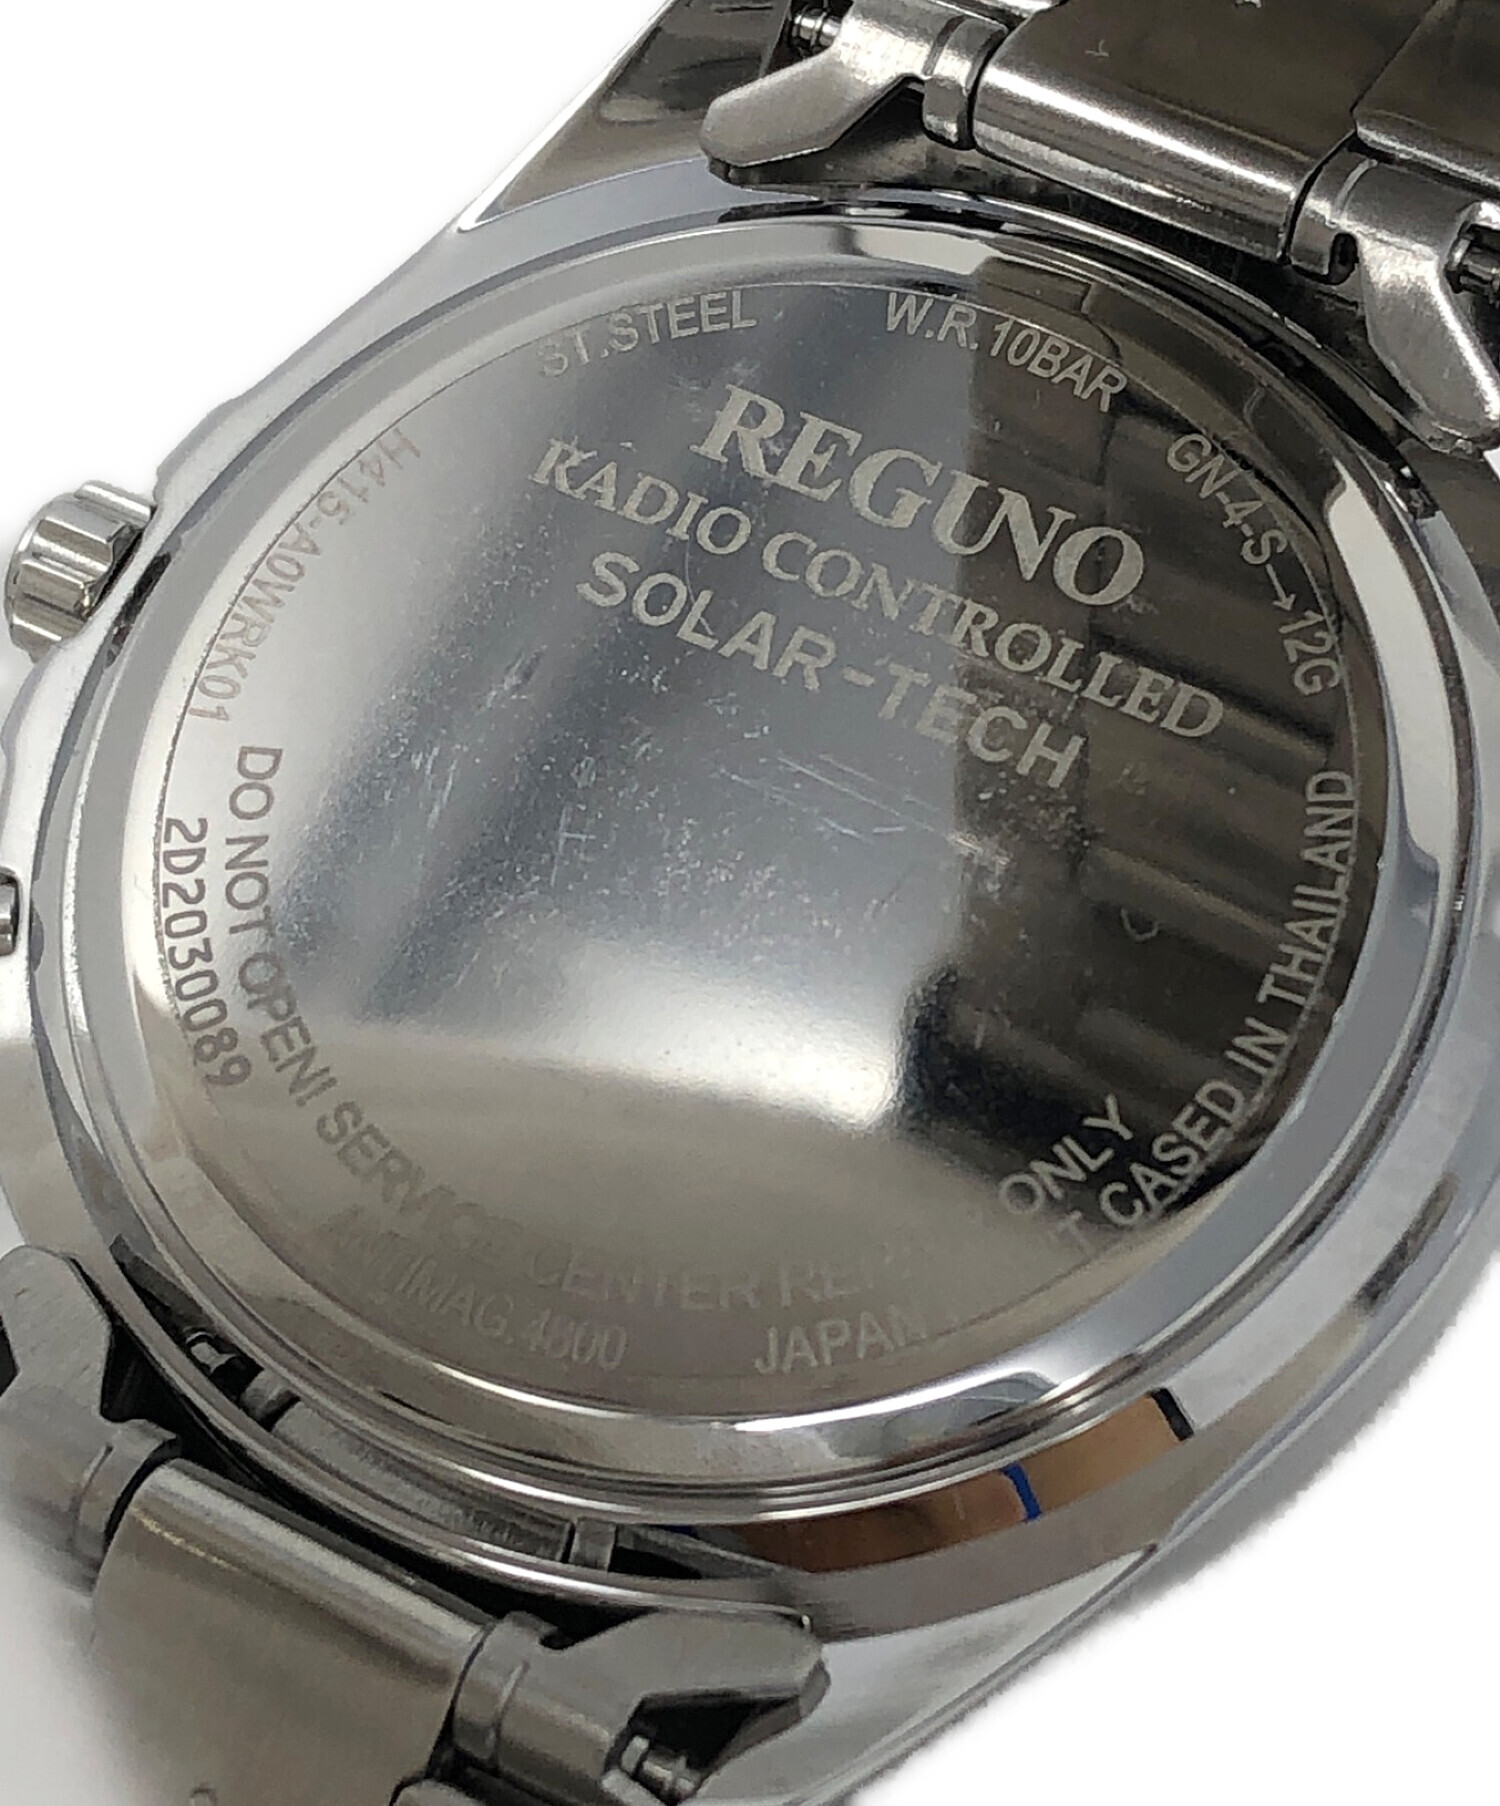 REGUNO (レグノ) 腕時計 ソーラーテック電波時計 サイズ:実寸サイズにてご確認ください。